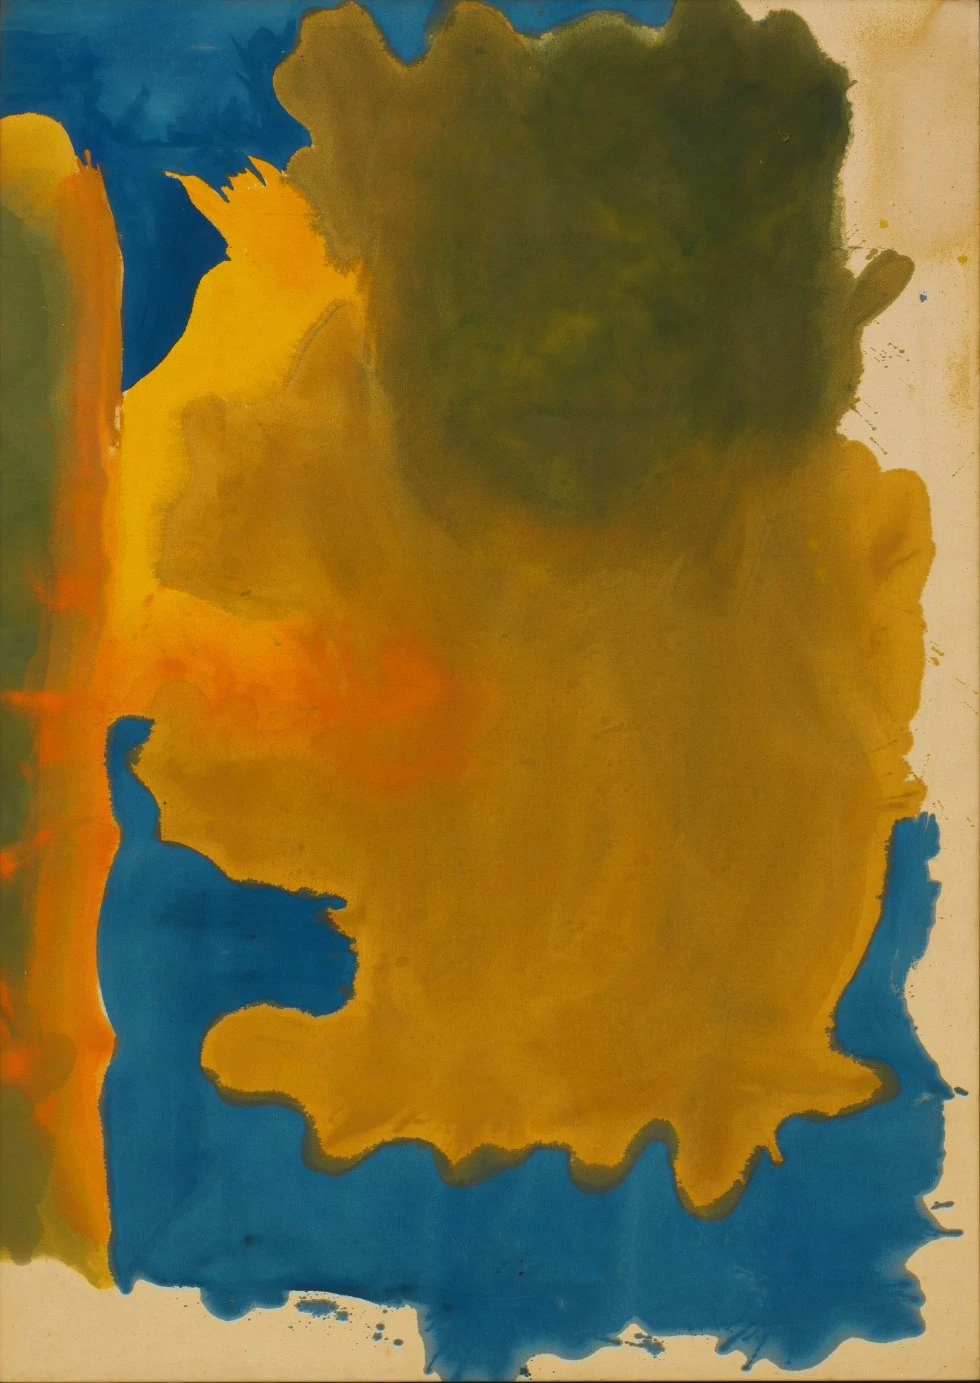 Helen Frankenthaler, The Artists